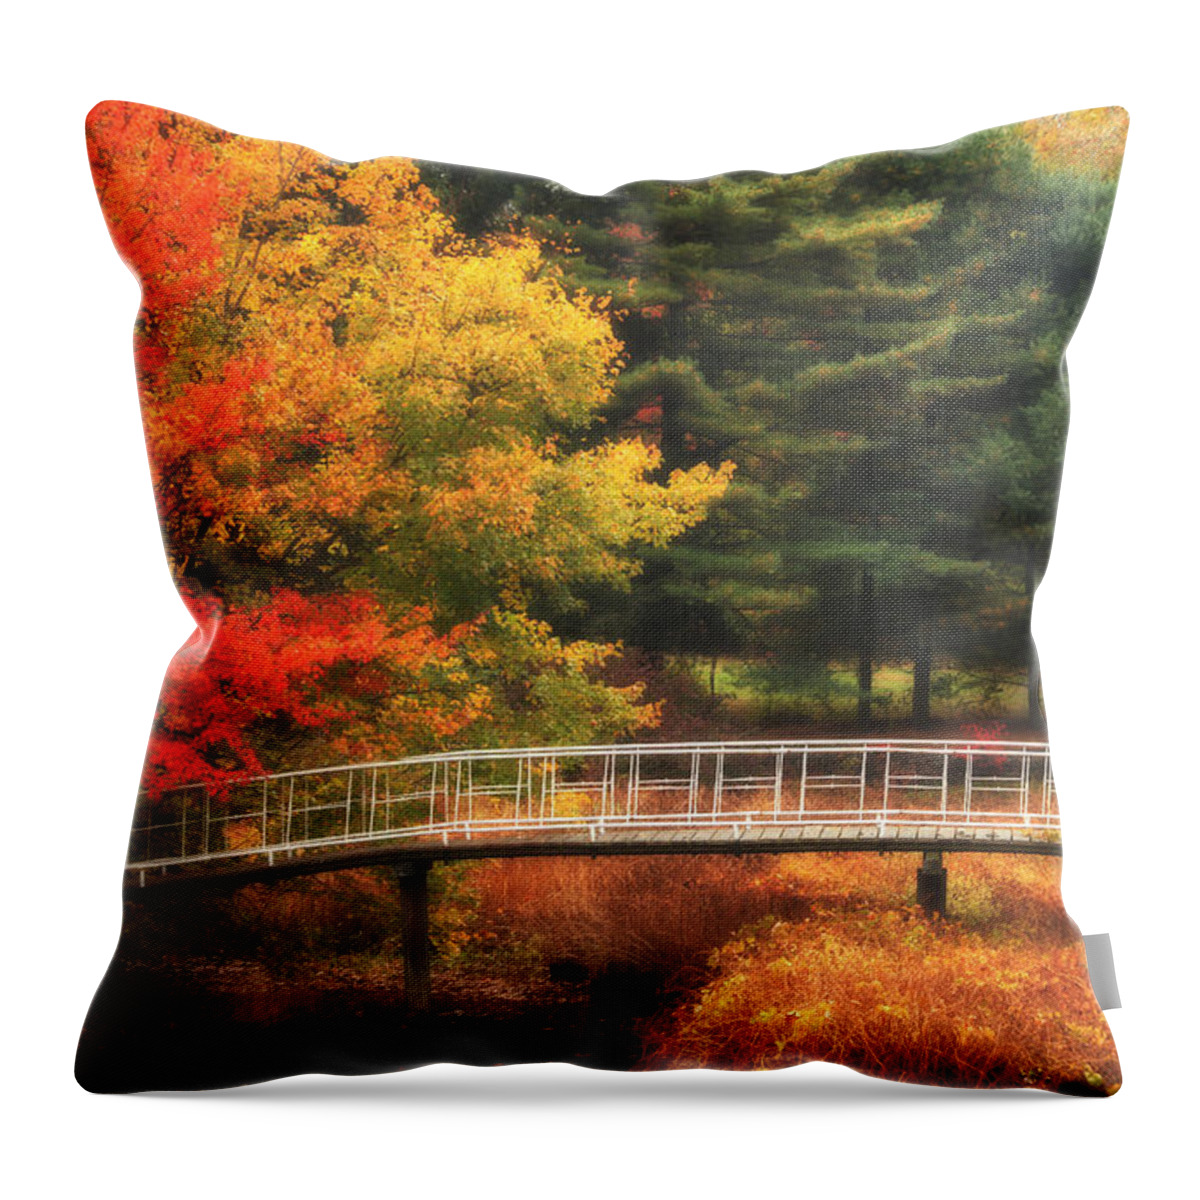 Autumn Throw Pillow featuring the photograph Bridge to Autumn by Karol Livote